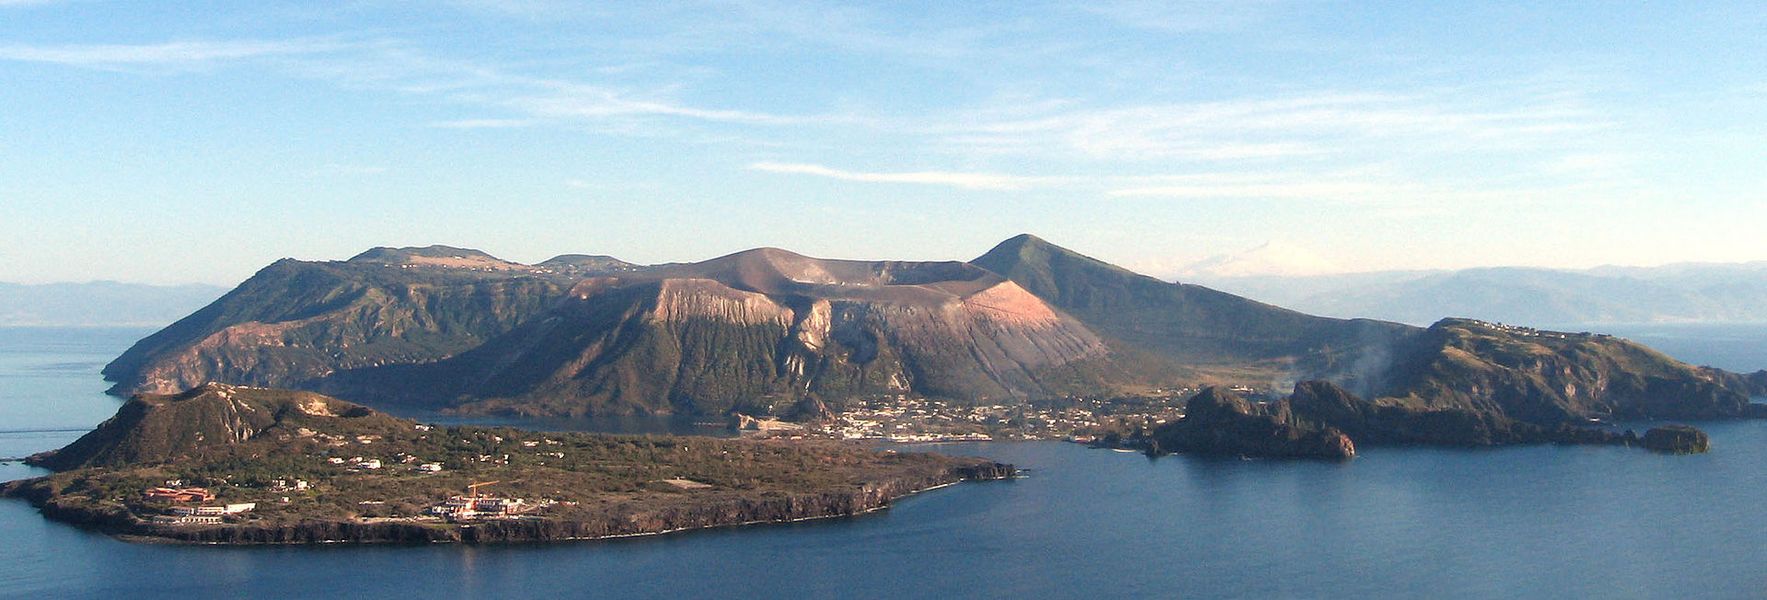 Isola vulcano